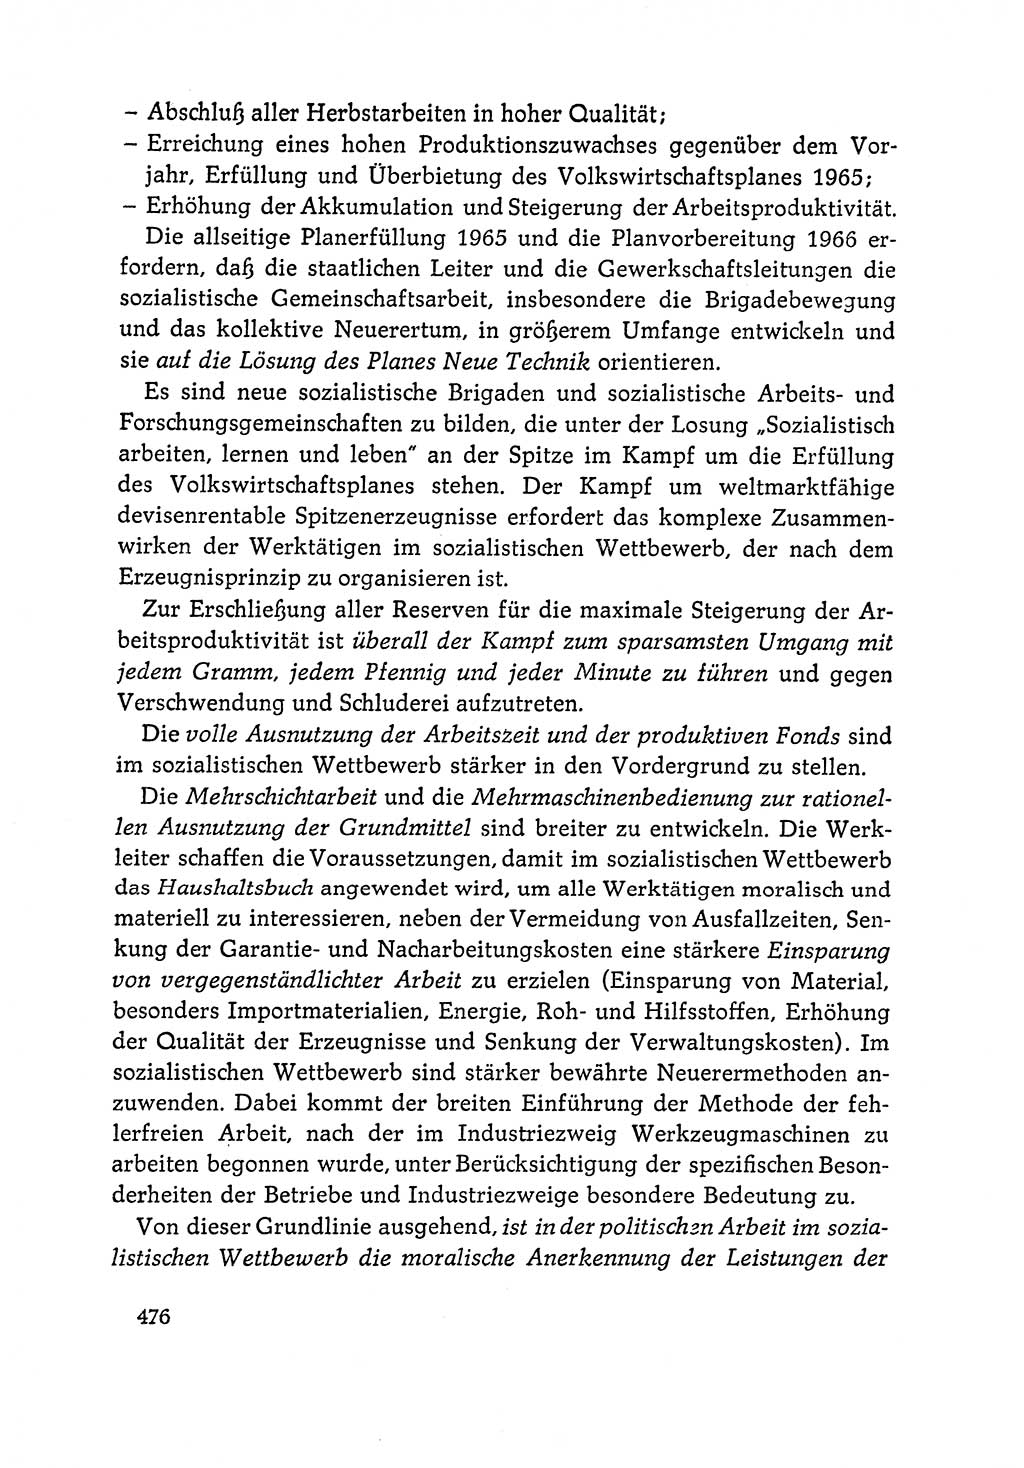 Dokumente der Sozialistischen Einheitspartei Deutschlands (SED) [Deutsche Demokratische Republik (DDR)] 1964-1965, Seite 476 (Dok. SED DDR 1964-1965, S. 476)